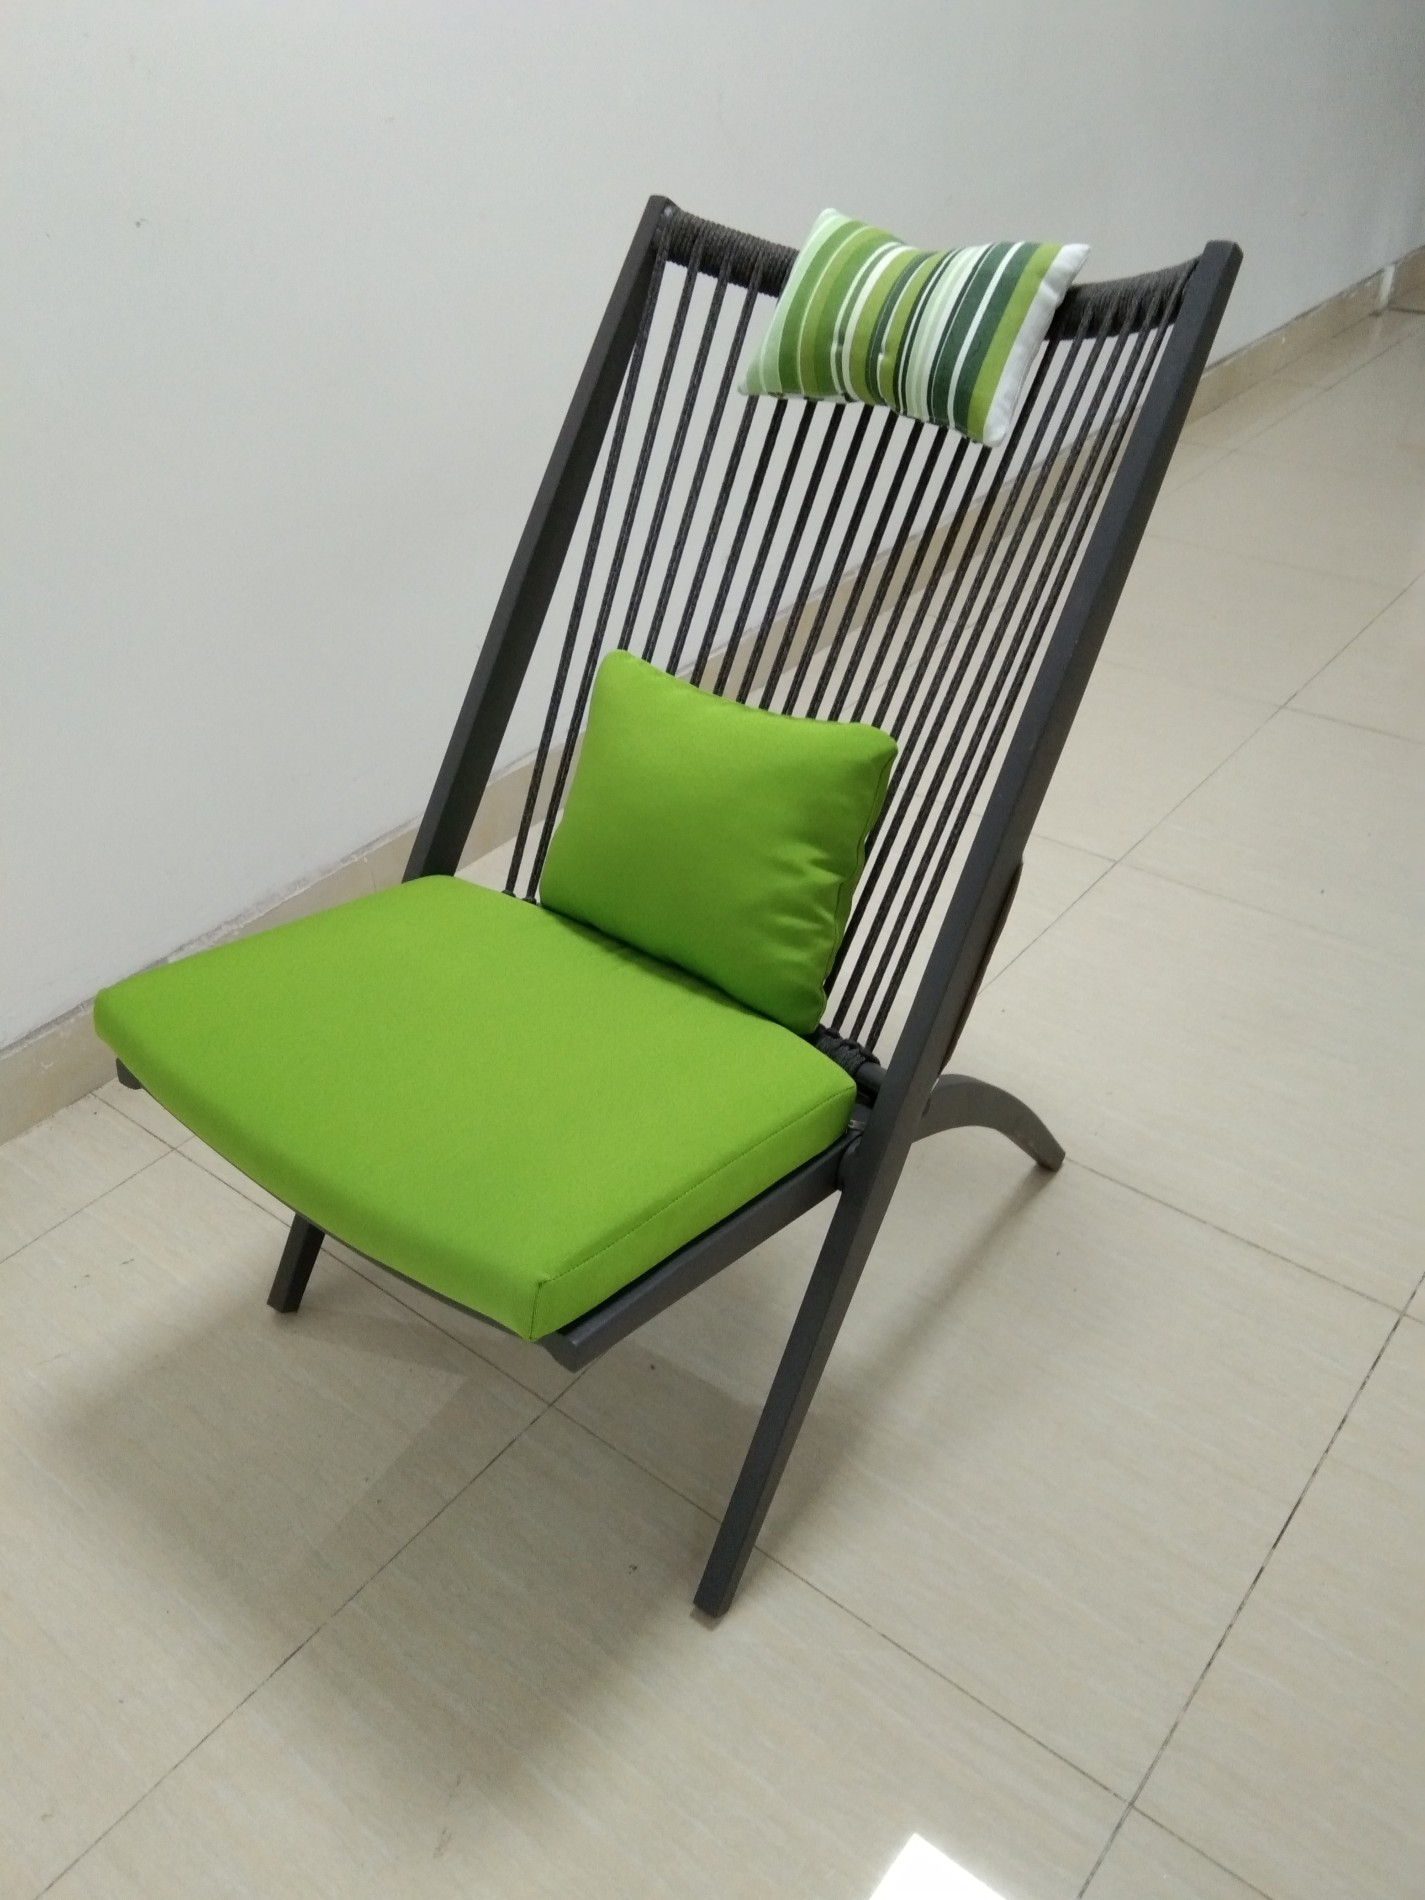 sillas plegables de aluminio silla al aire libre